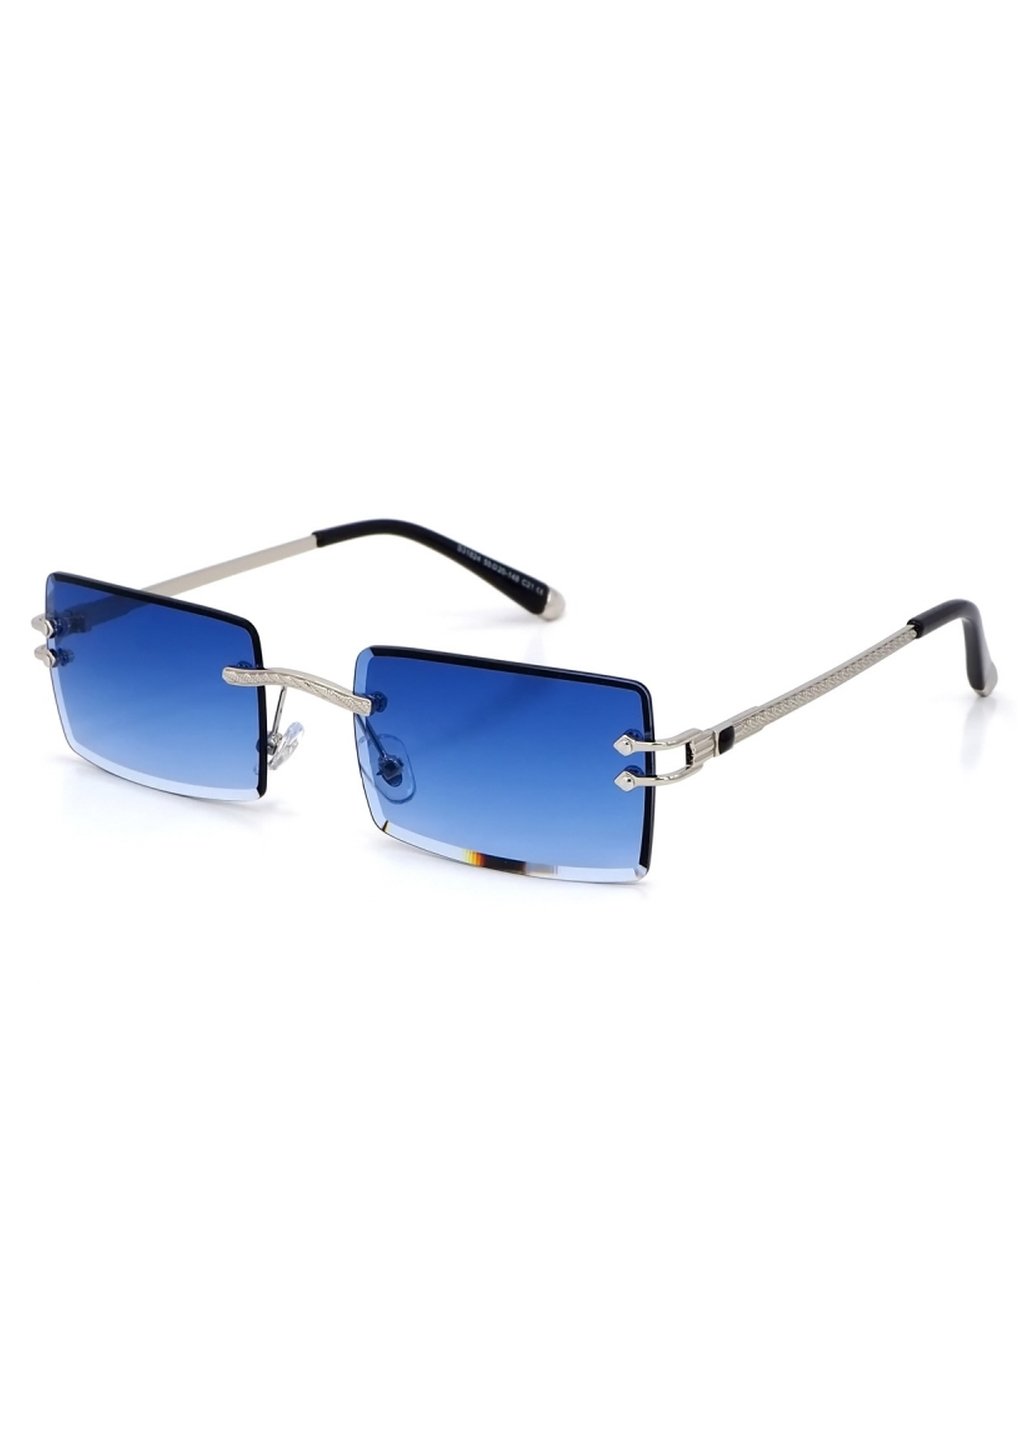 Купить Женские солнцезащитные очки Merlini с поляризацией S31824 117073 - Серый в интернет-магазине